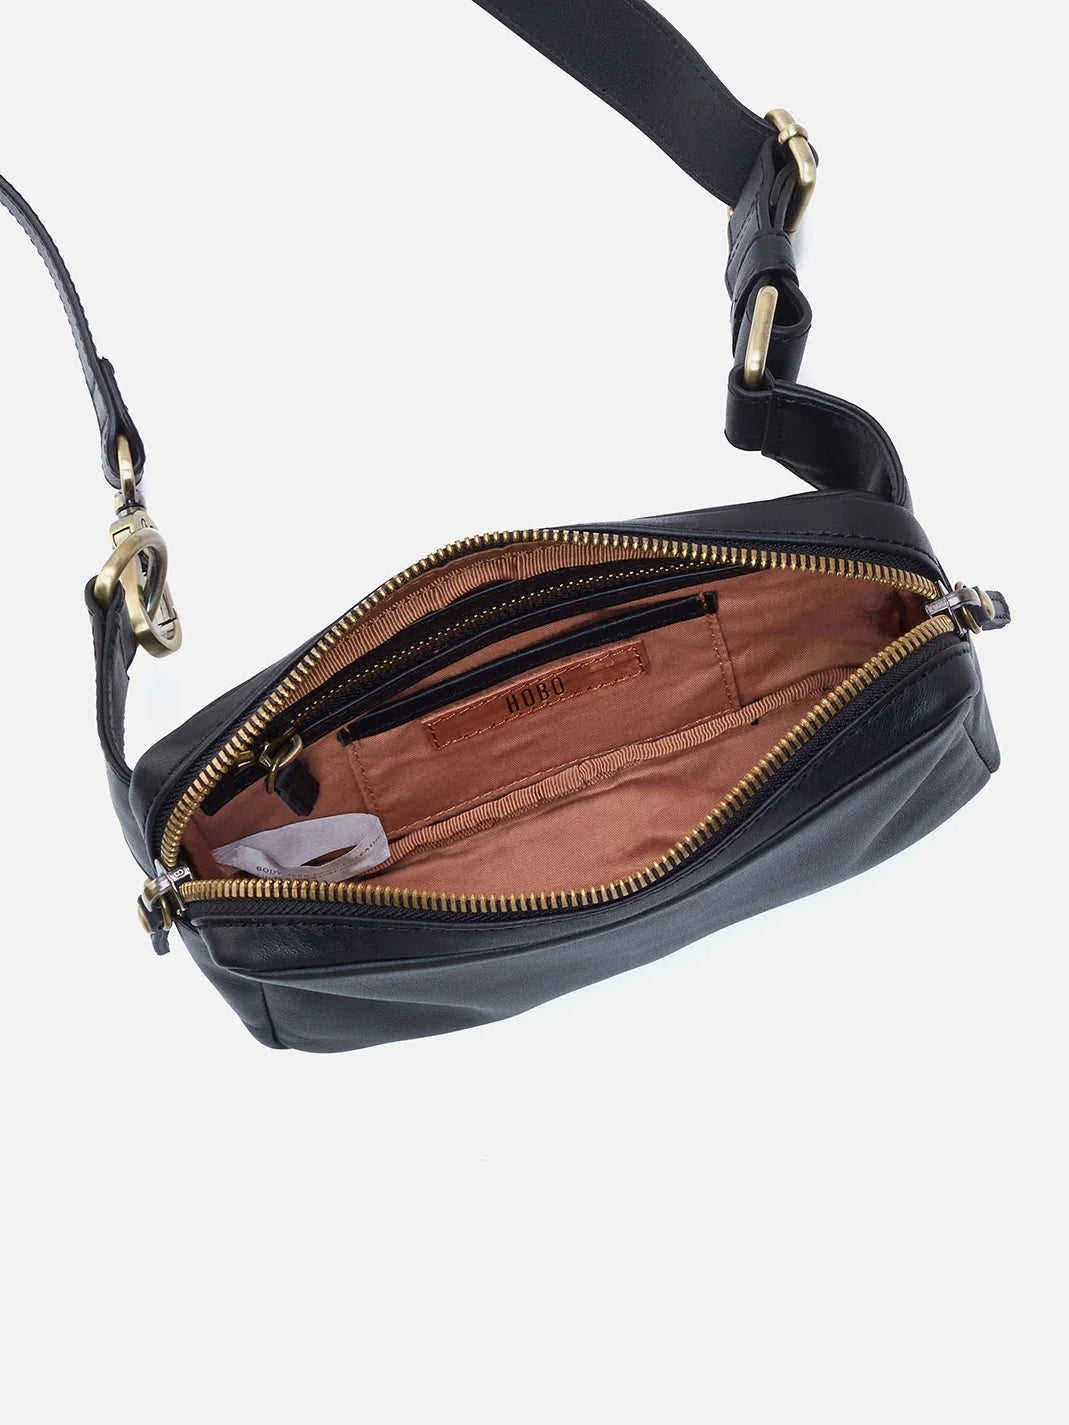 hobo men's sling bag in black silk napa leather